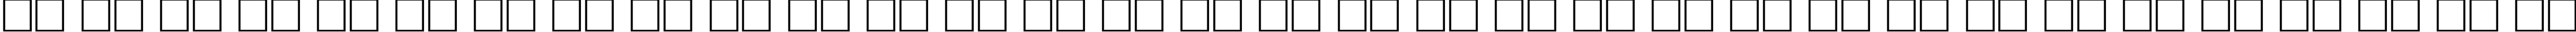 Пример написания русского алфавита шрифтом SchoolBookCTT BoldItalic